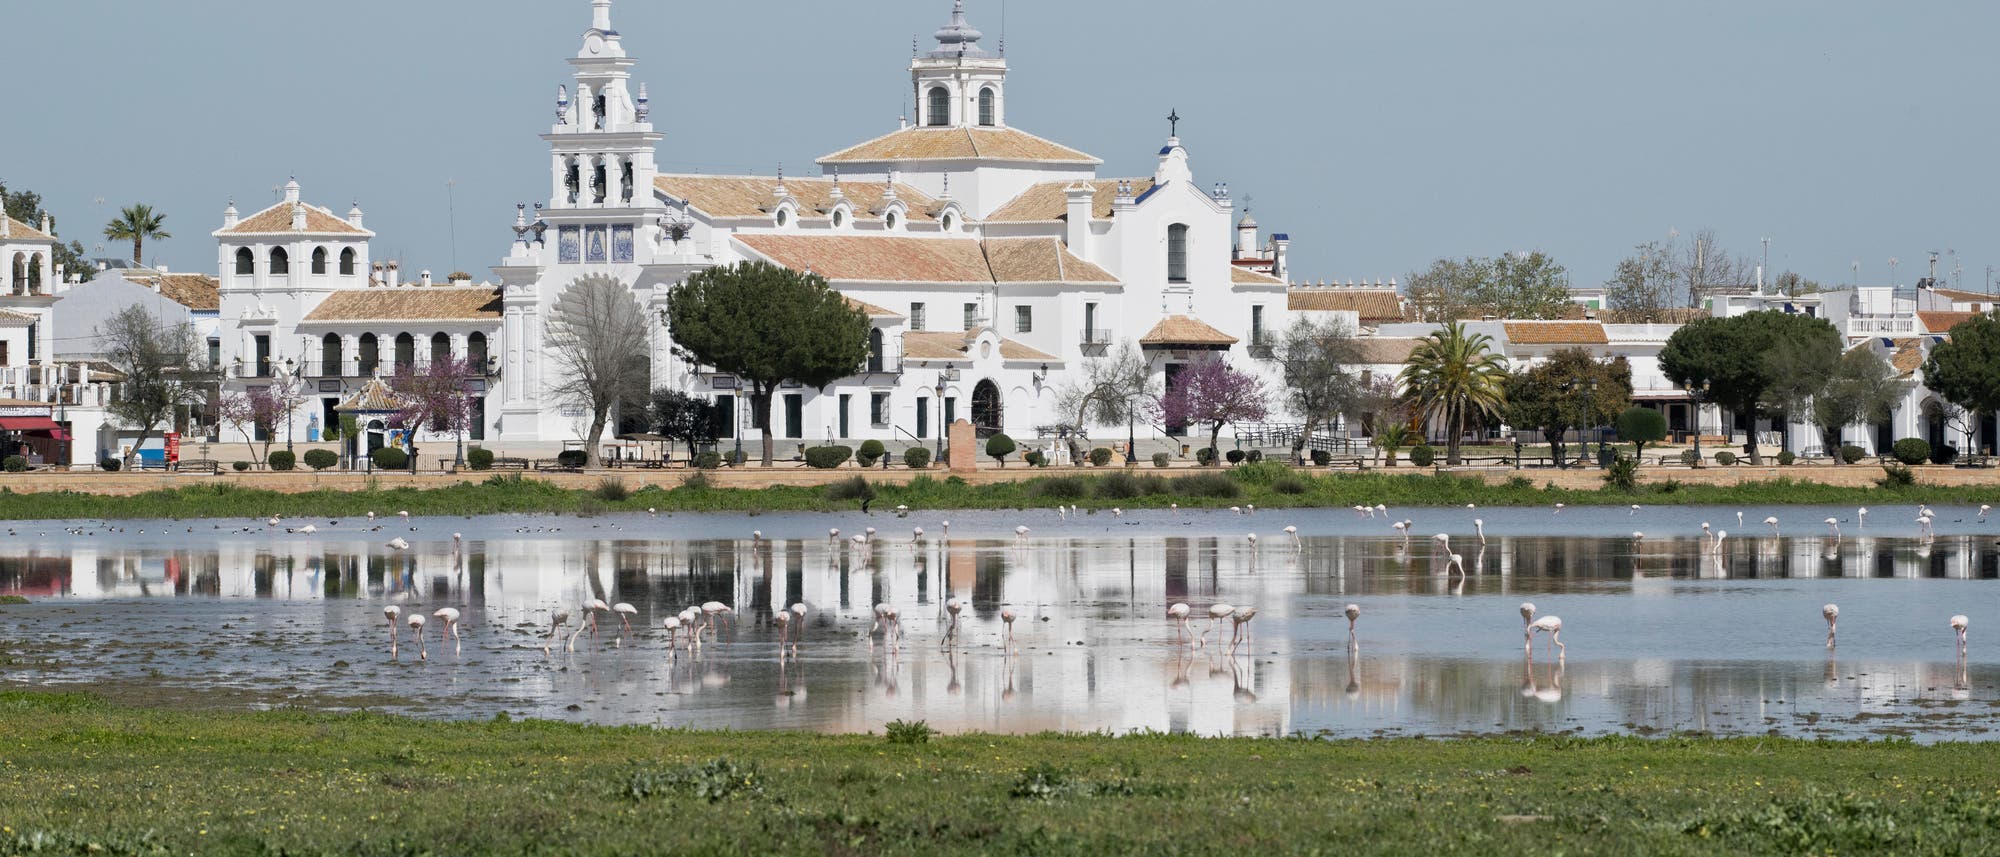 Wallfahrtskirche Ermita de el Rocio mit Lagune: Die Gebäude im Hintergrund sind weiß mit roten Ziegeldächern, dominiert wird die Bildmitte von der Kirche. Im Vordergrund erstreckt sich eine flache Lagune, in der Wasservögel, vornehmlich Flamingos, stehen. Im Vordergrund befindet sich eine Fläche mit kurzem Gras und nackter Boden.